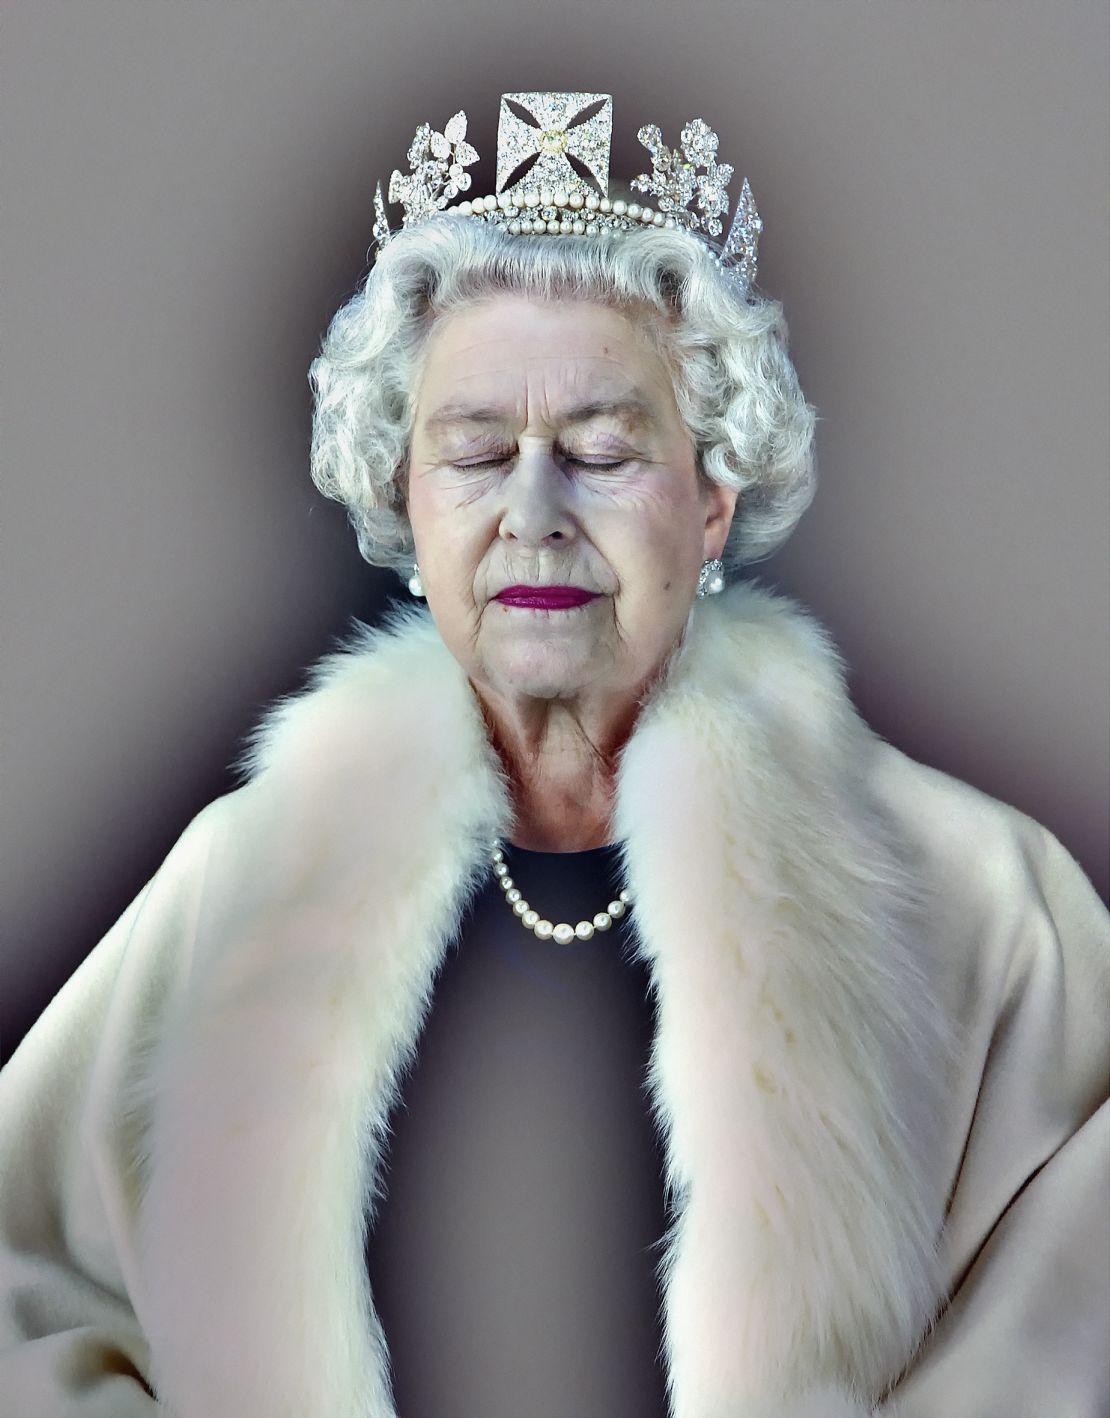 UK-based artist Chris Levine's portrait of Queen Elizabeth II titled "Lightness of Being."